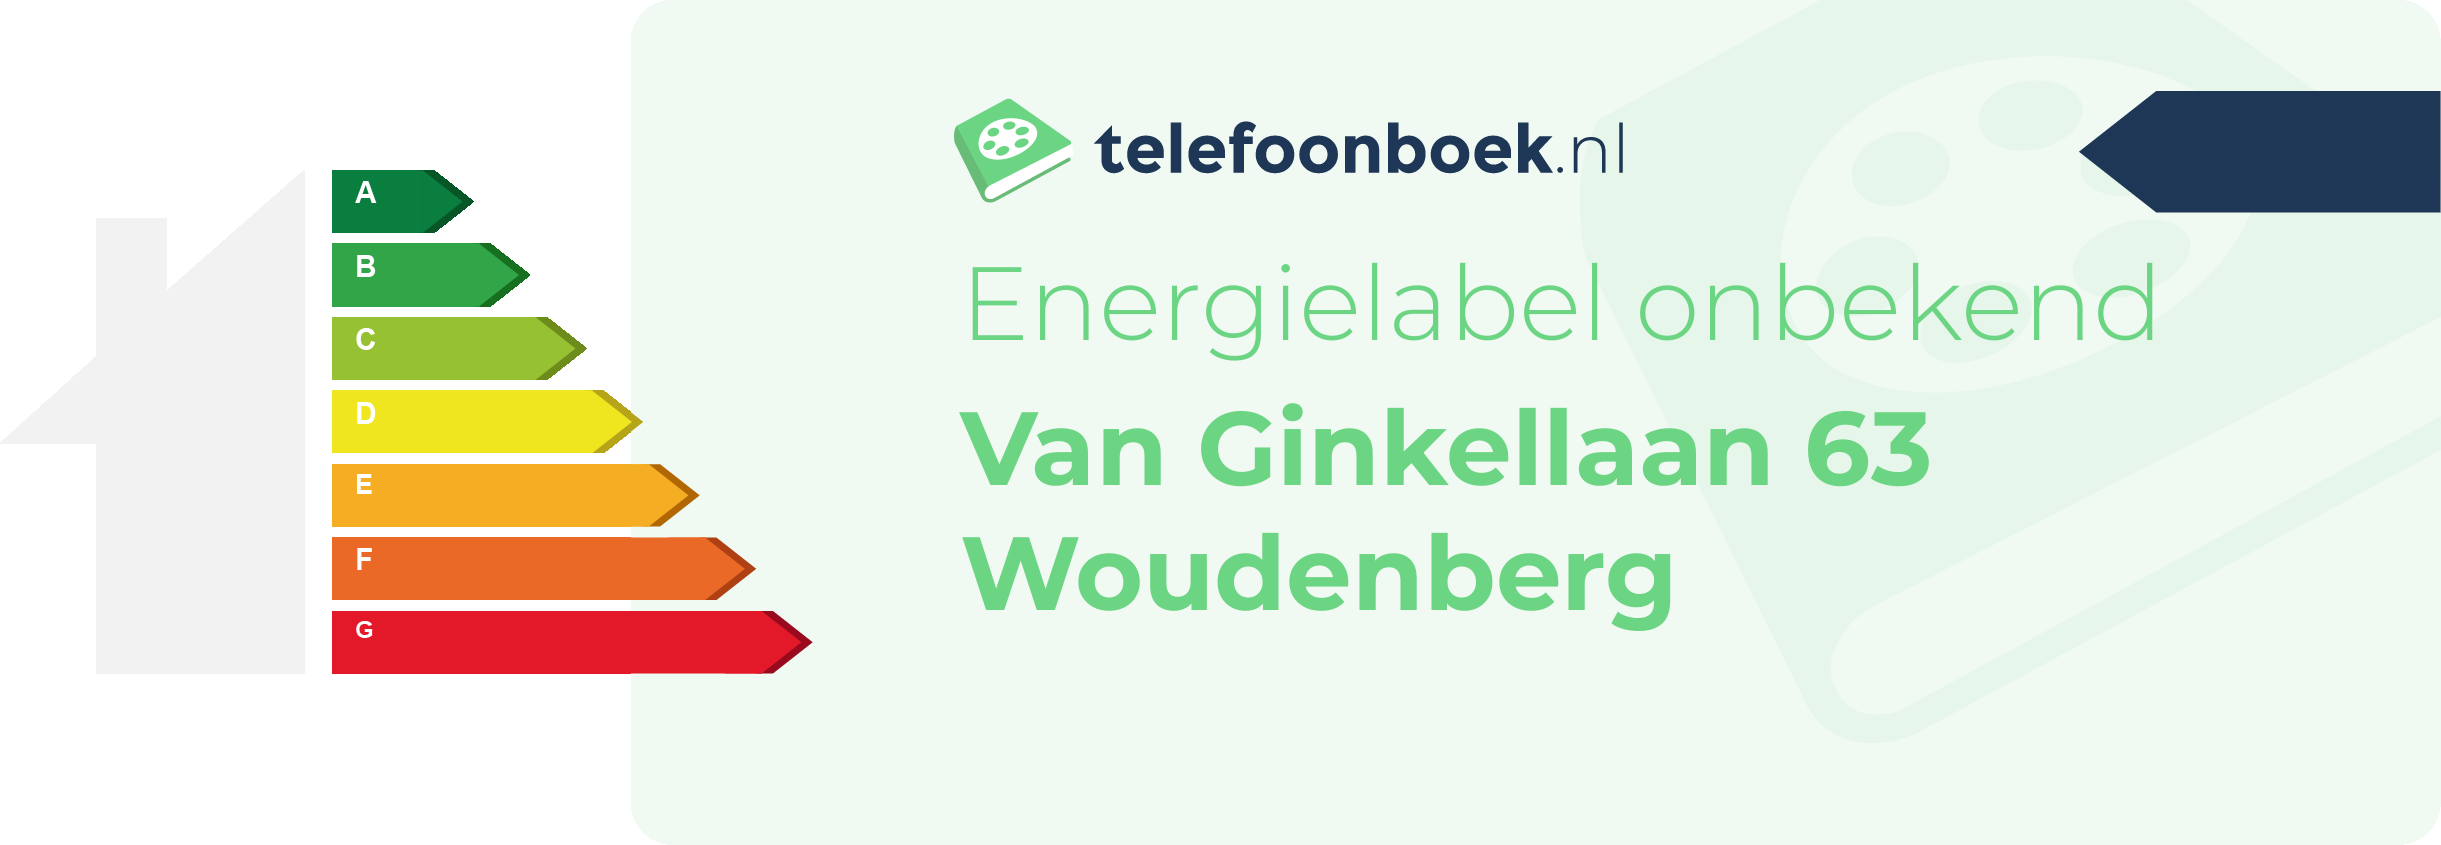 Energielabel Van Ginkellaan 63 Woudenberg